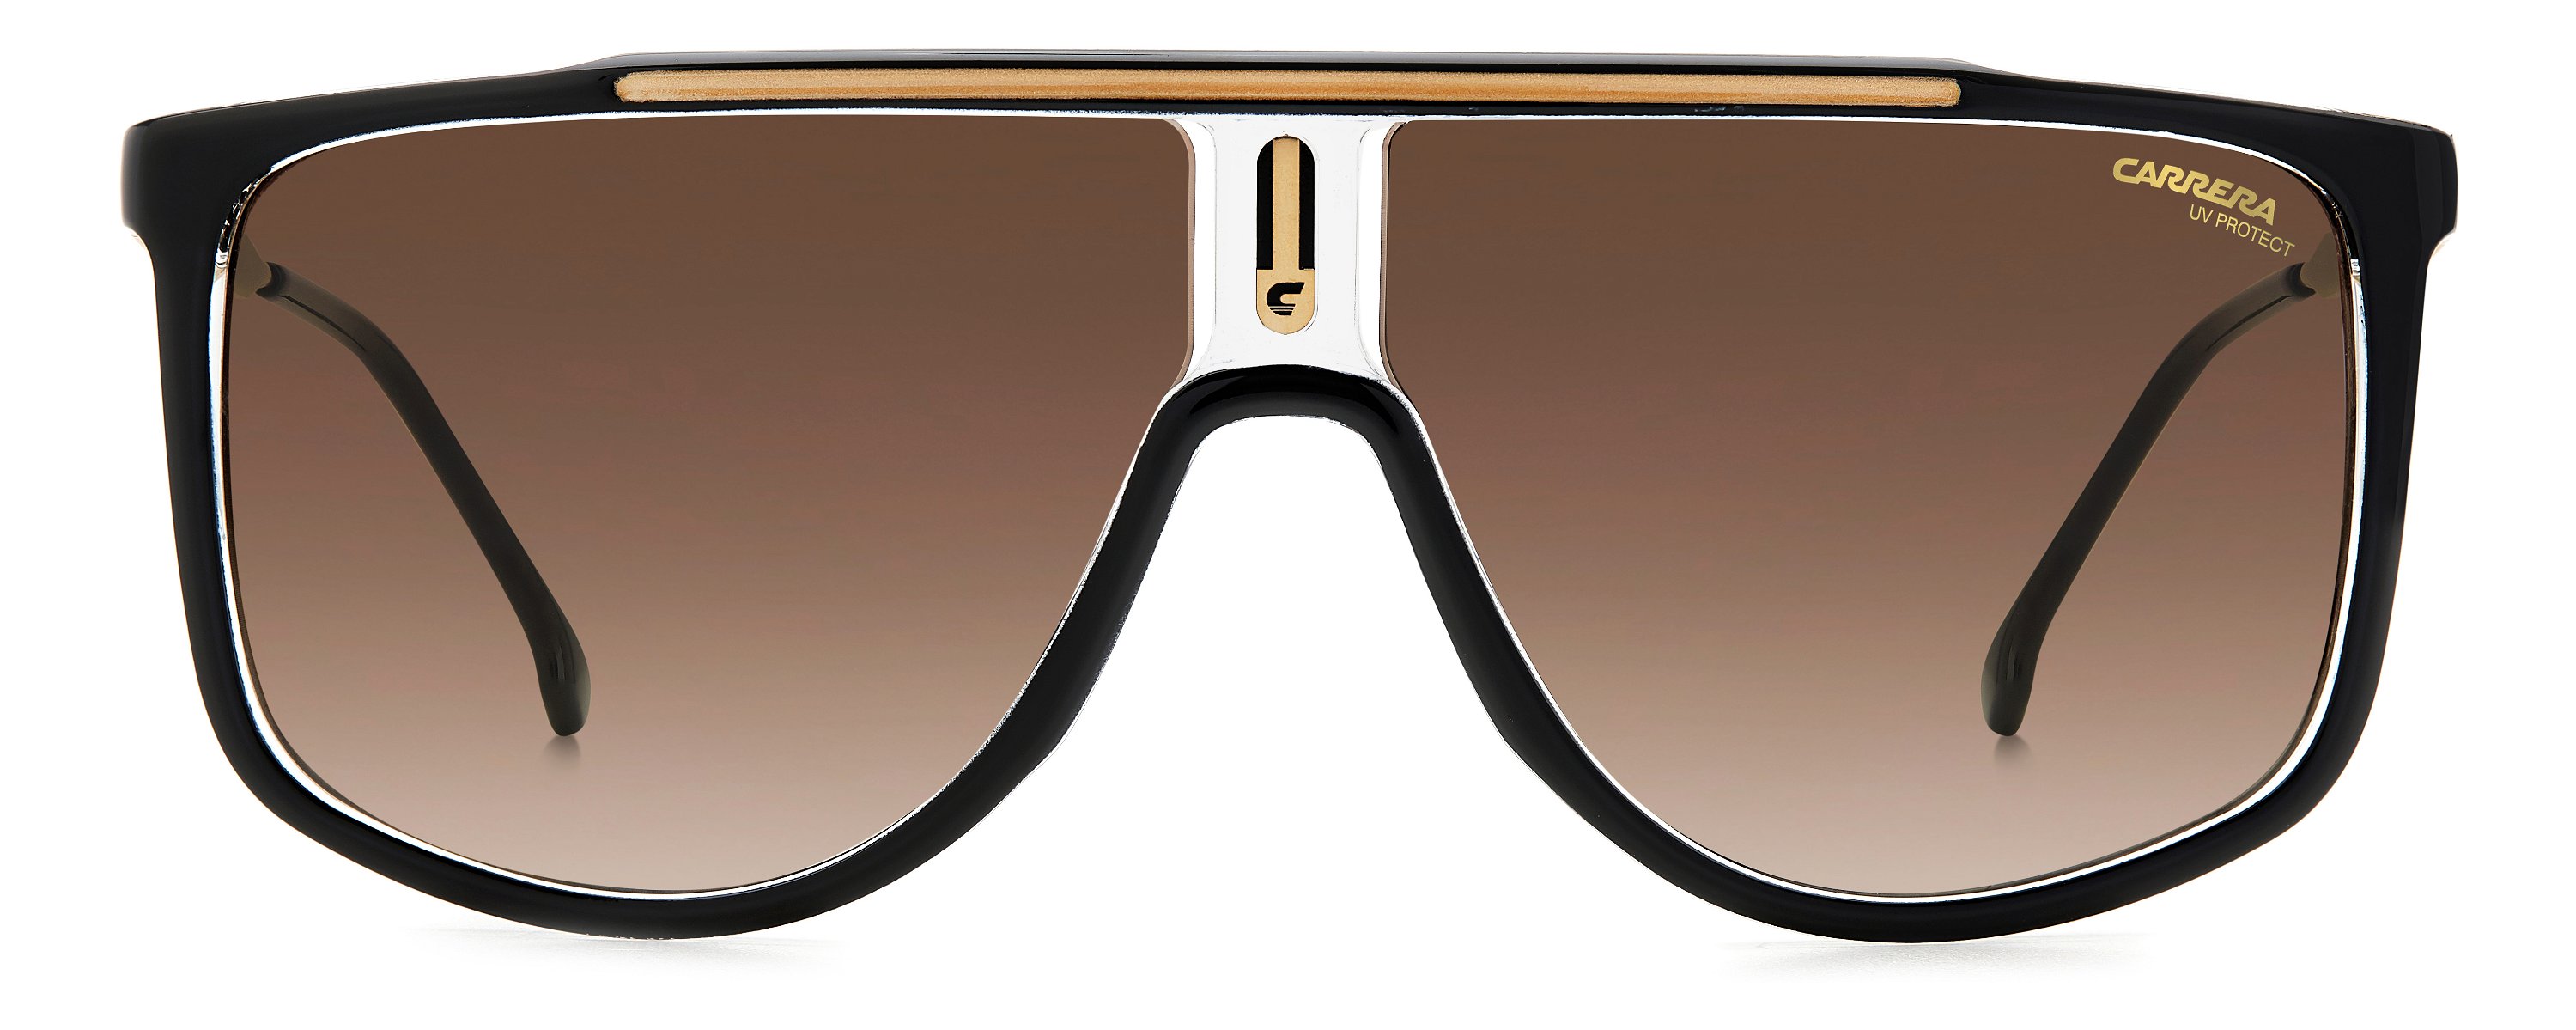 Carrera Sonnenbrille 1056/S 2M2 gold schwarz